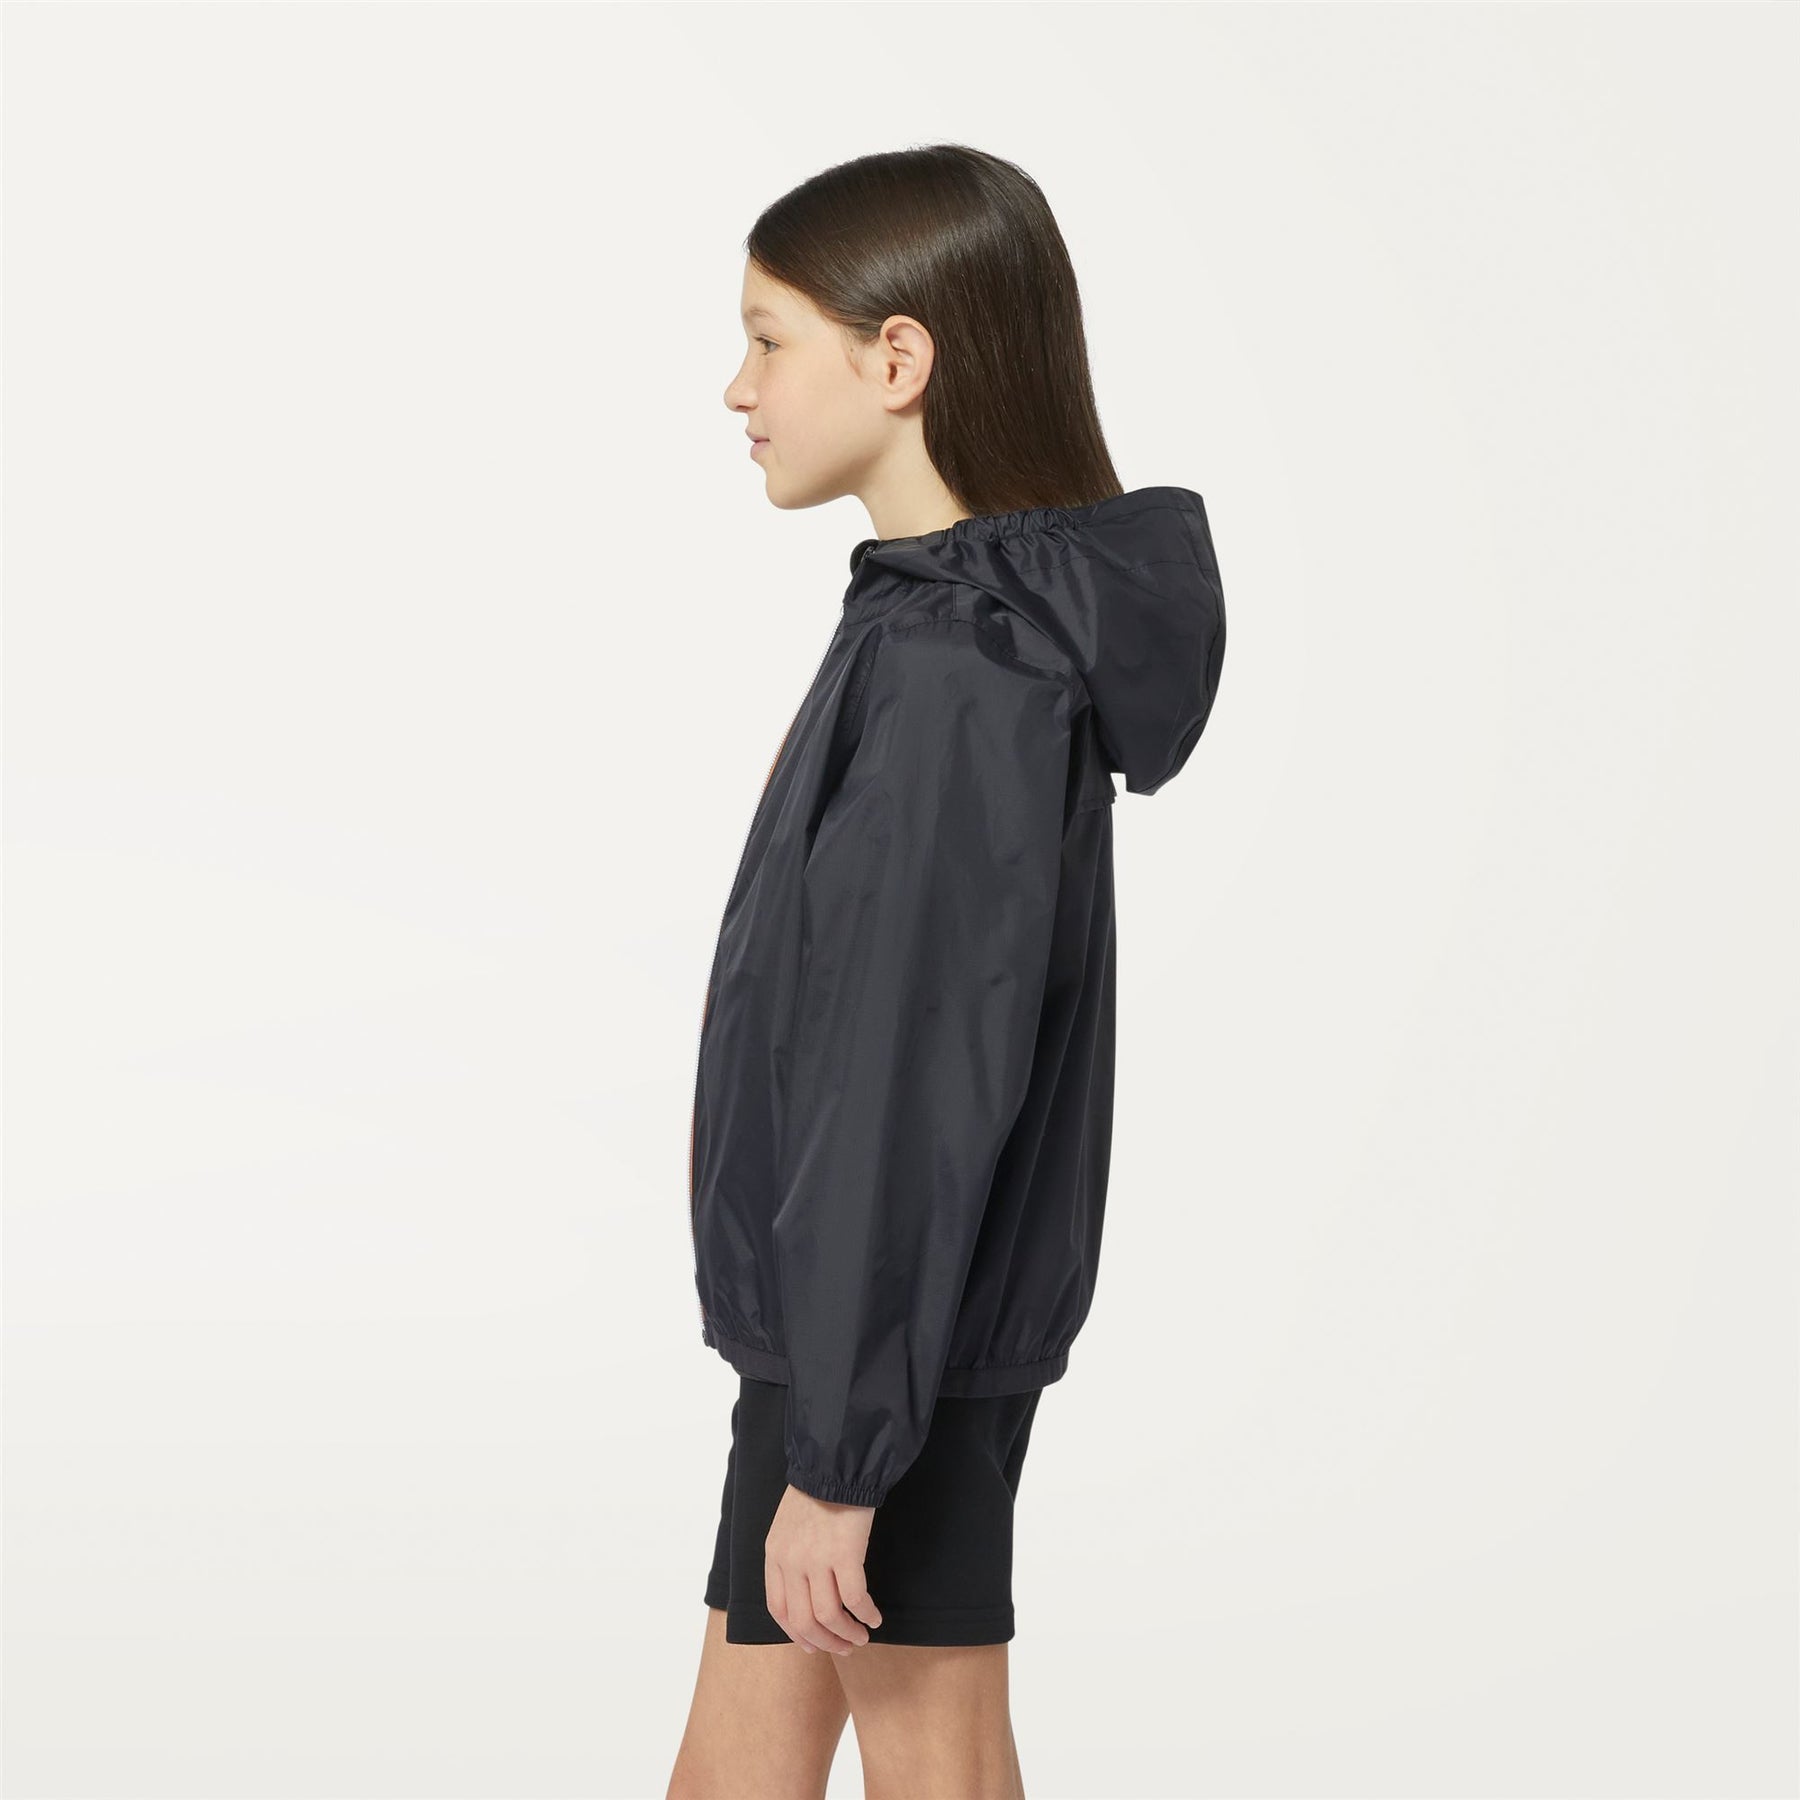 Claude - Kids Packable Full Zip Waterproof Rain Jacket in Black Pure